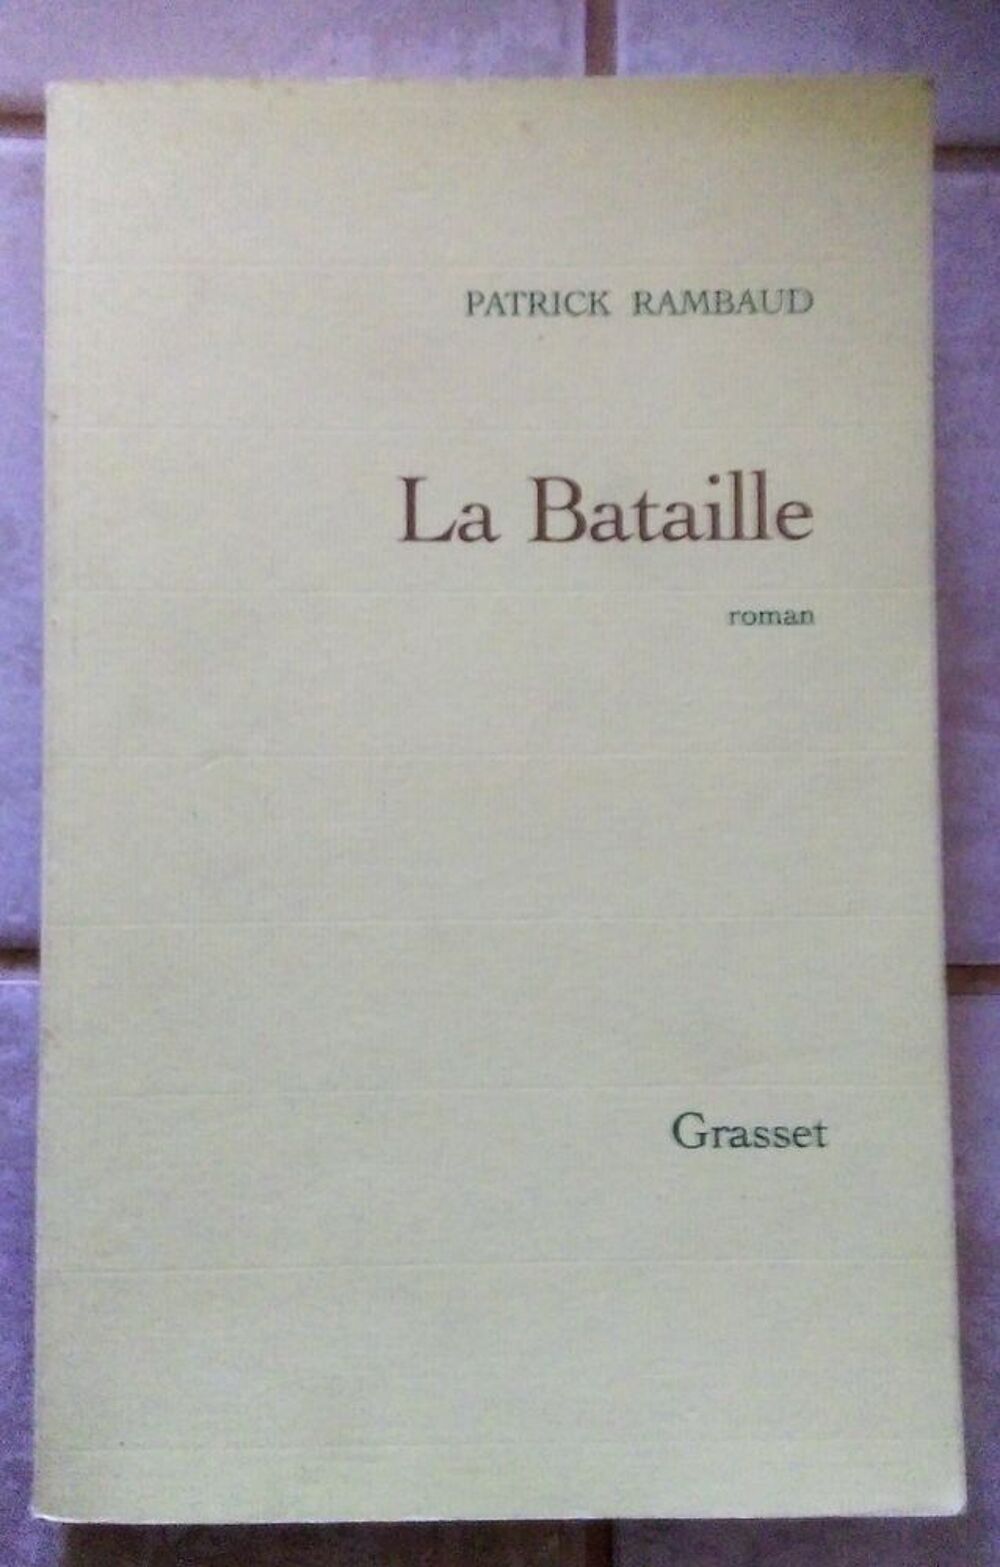 La Bataille Patrick Rambaud -1 euro 
Livres et BD